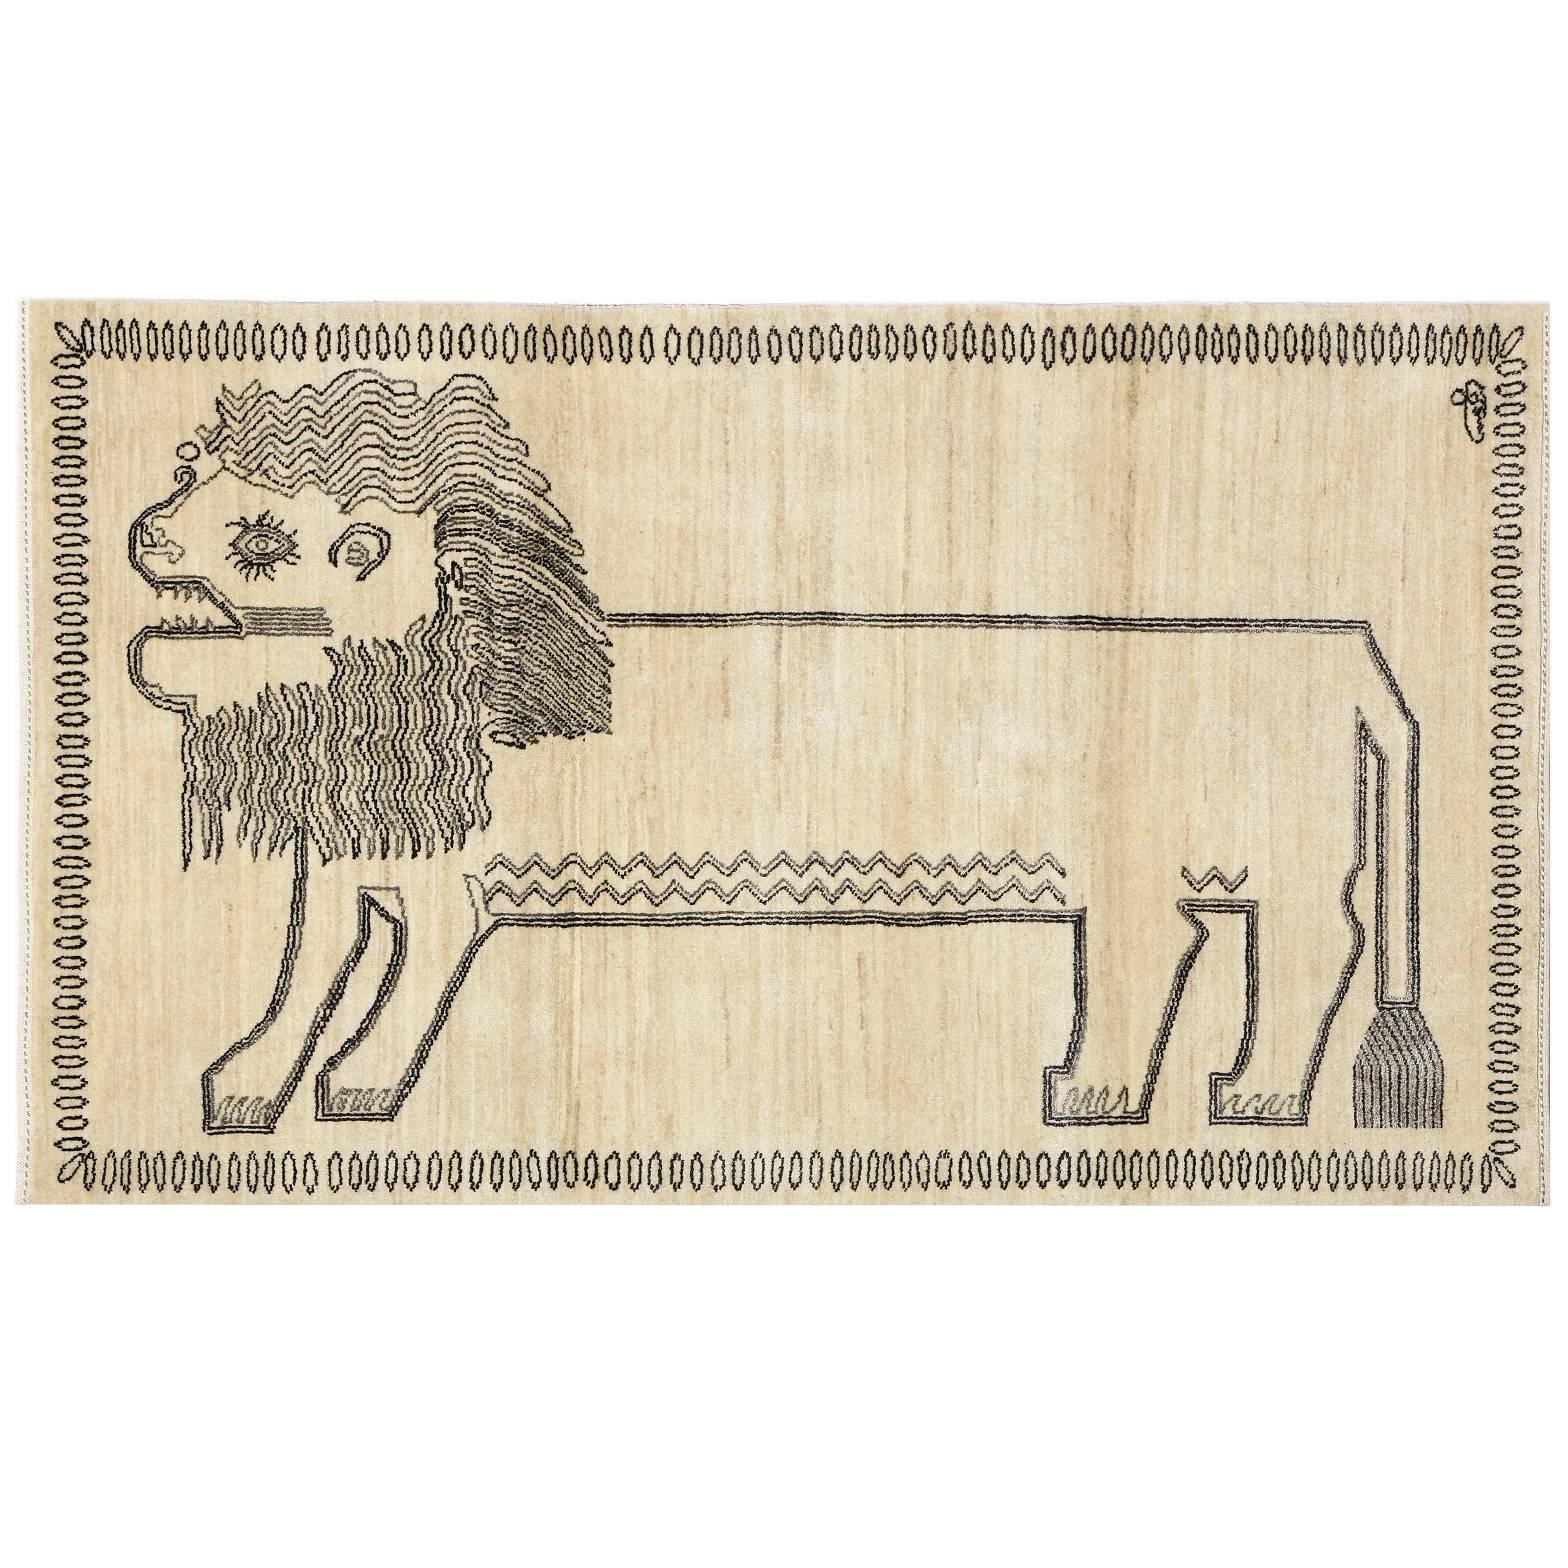 Orley Shabahang Lion Persian Tribal Animal Rug, 3' x 5' 